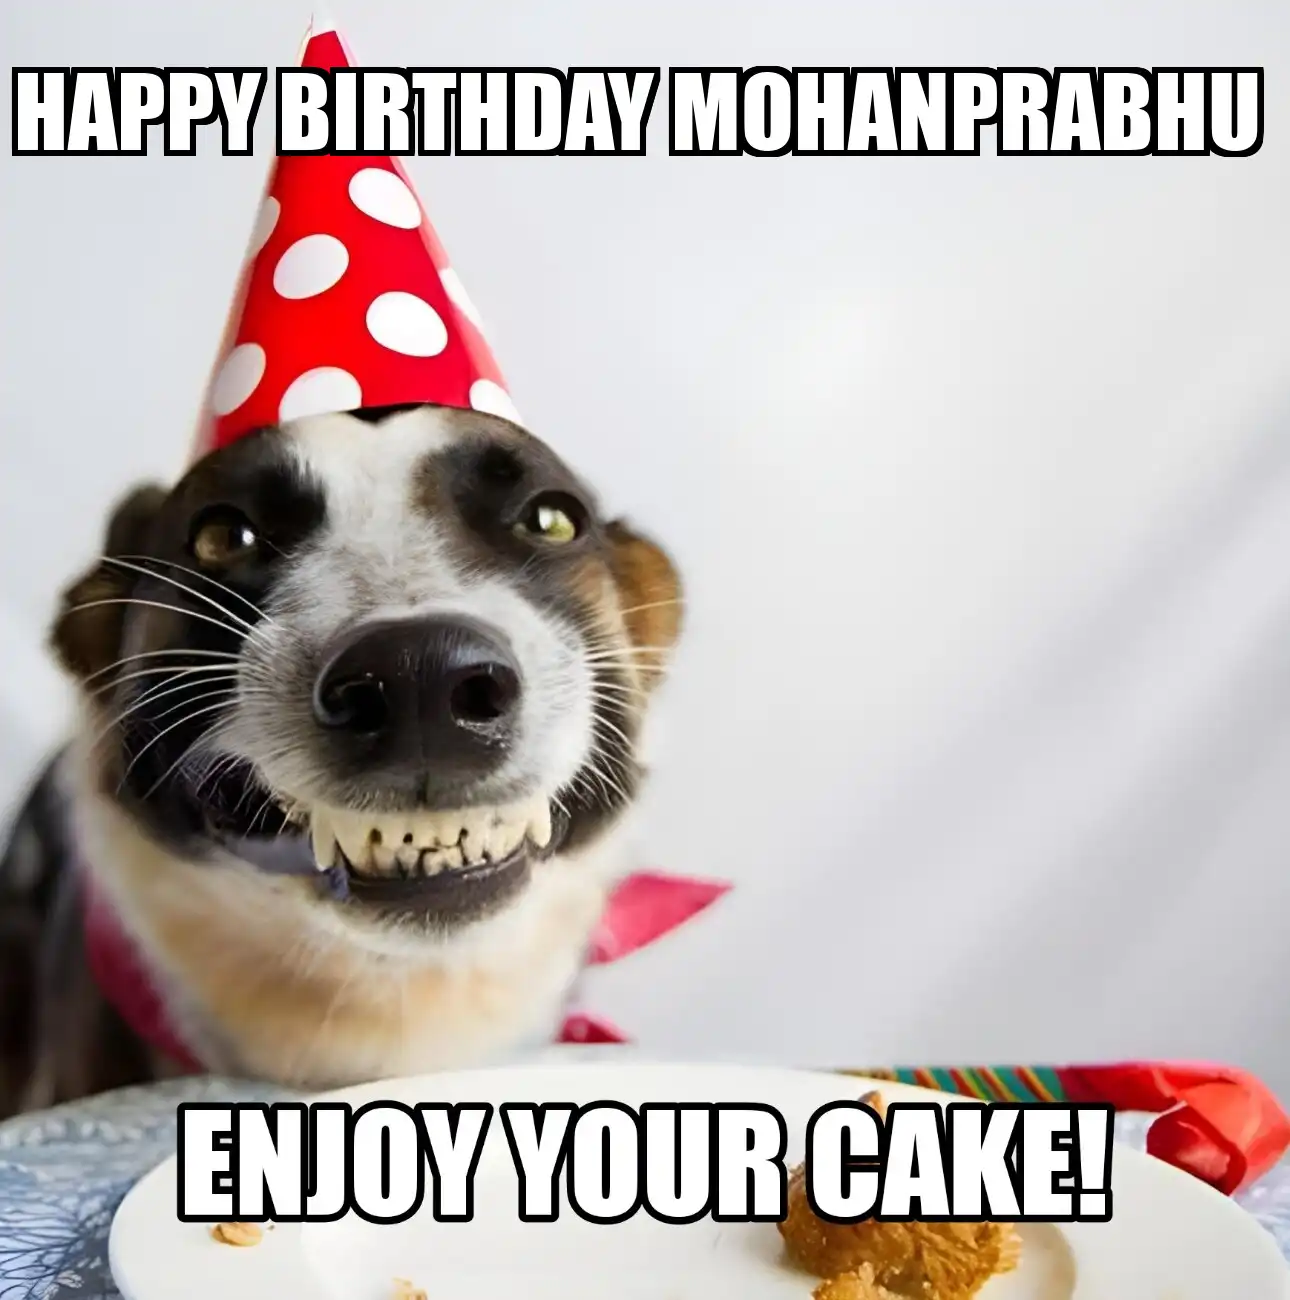 Happy Birthday Mohanprabhu Enjoy Your Cake Dog Meme